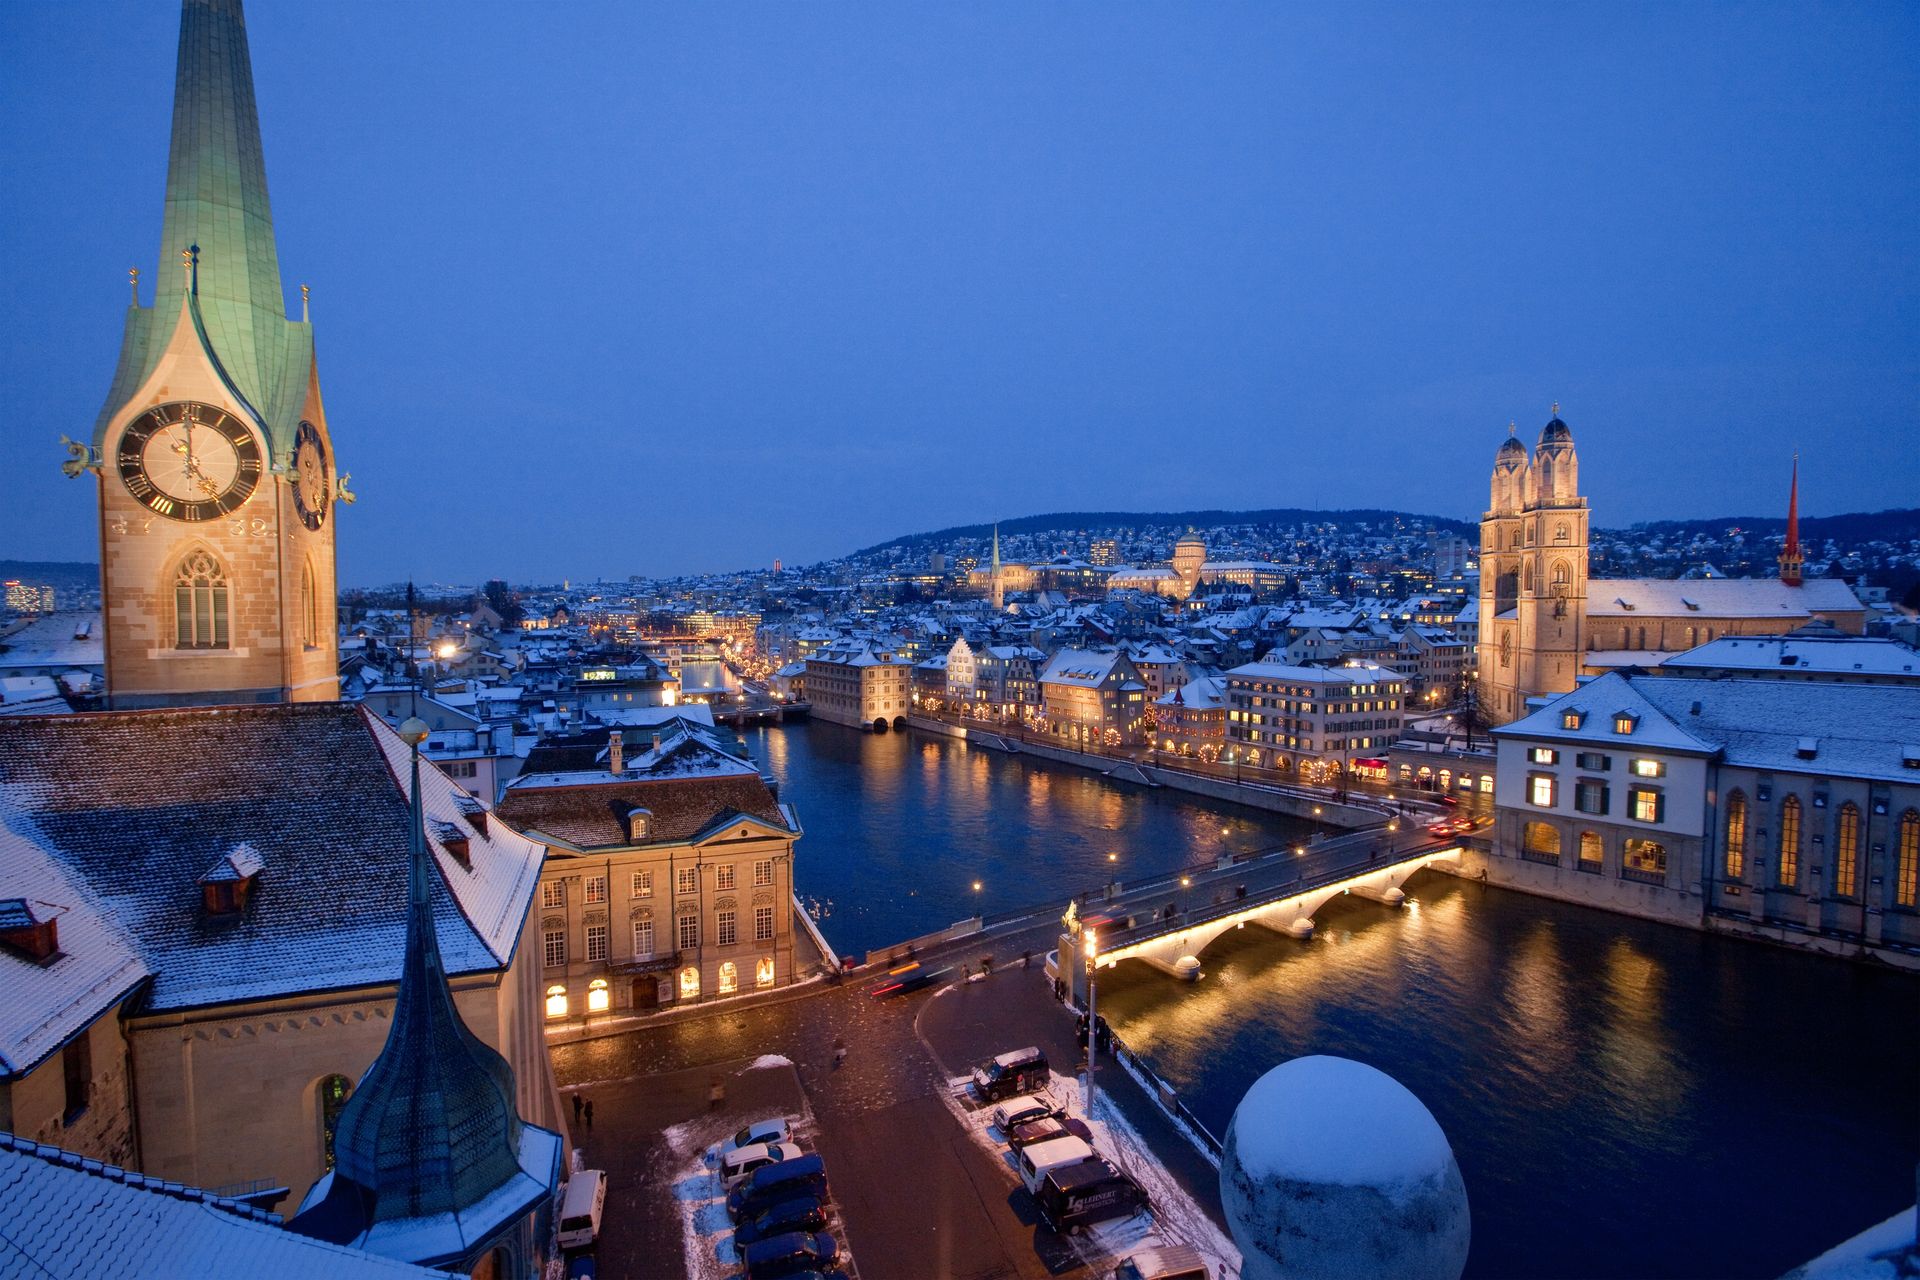 Vue sur Zurich en hiver illuminée - Suisse ©Zurich Tourism